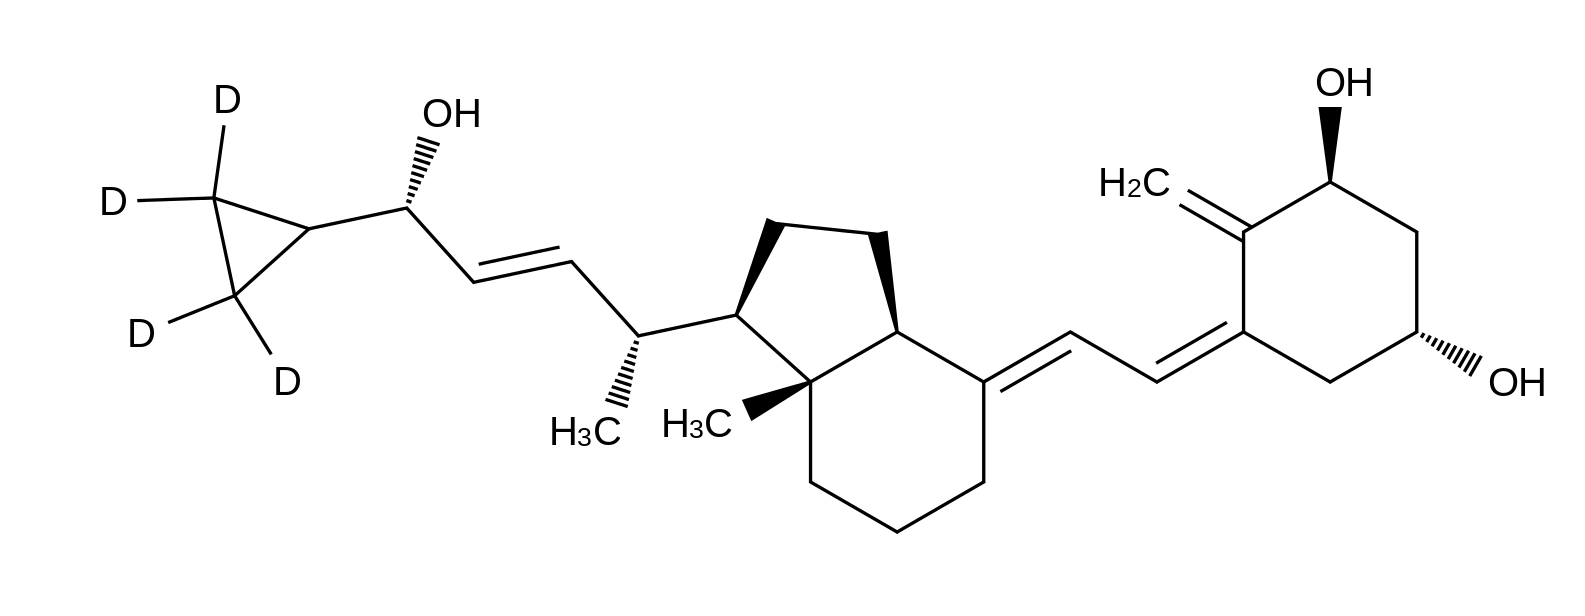 Calcipotriene-d<sub>4</sub>